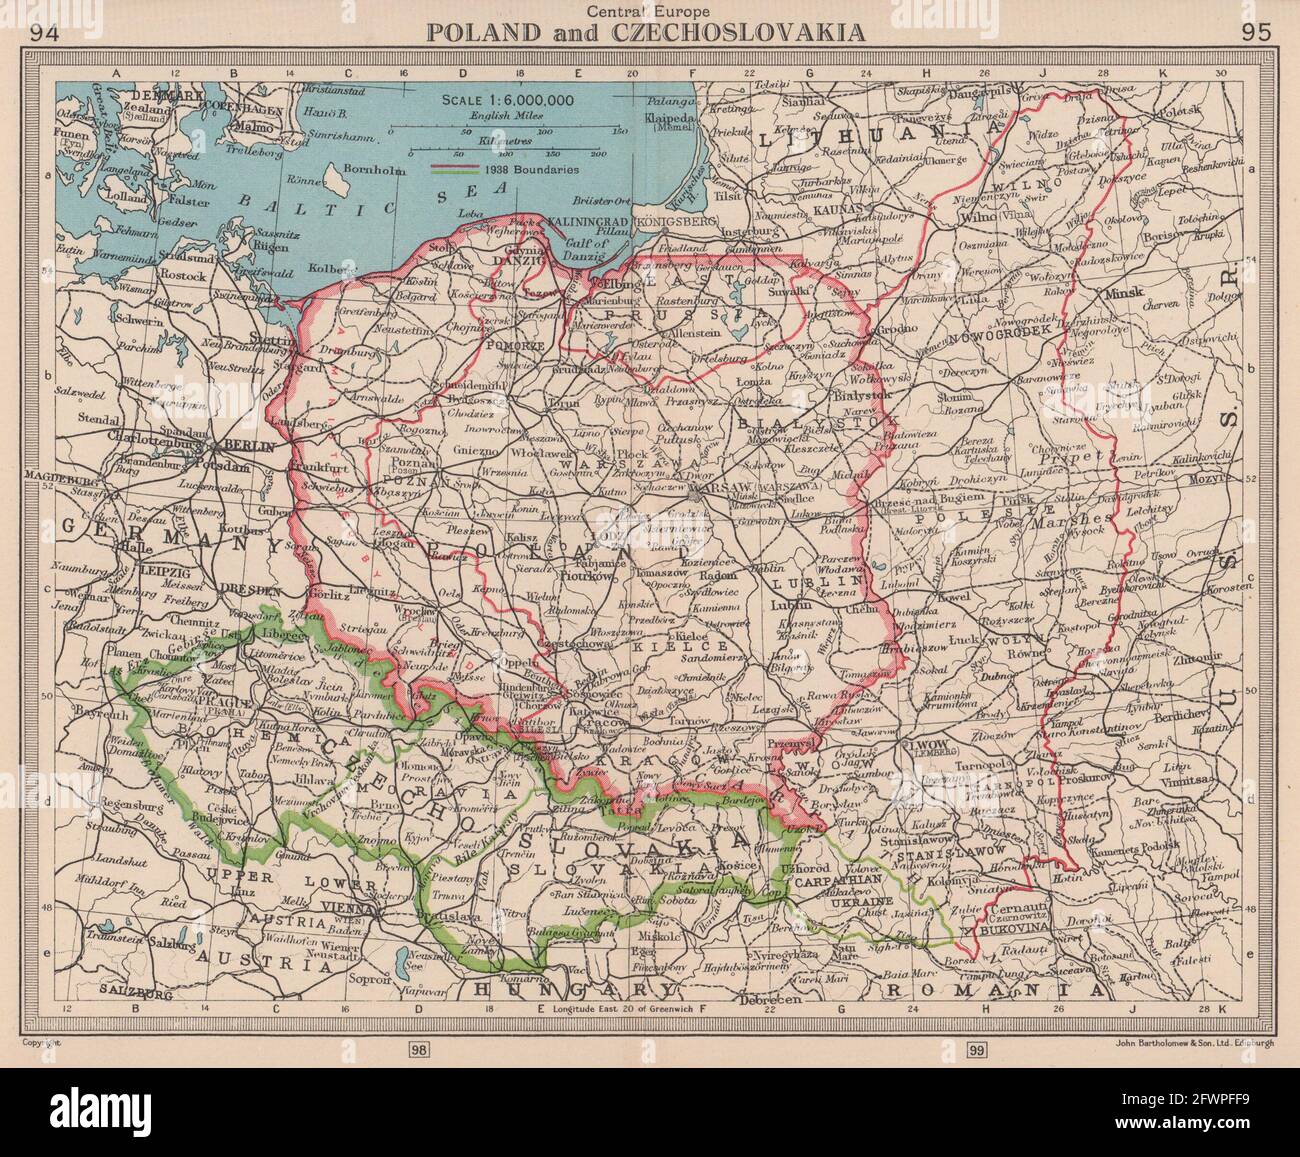 Pologne et Tchécoslovaquie. Affichage des bordures 1938 et 1945. BARTHOLOMEW 1949 vieille carte Banque D'Images